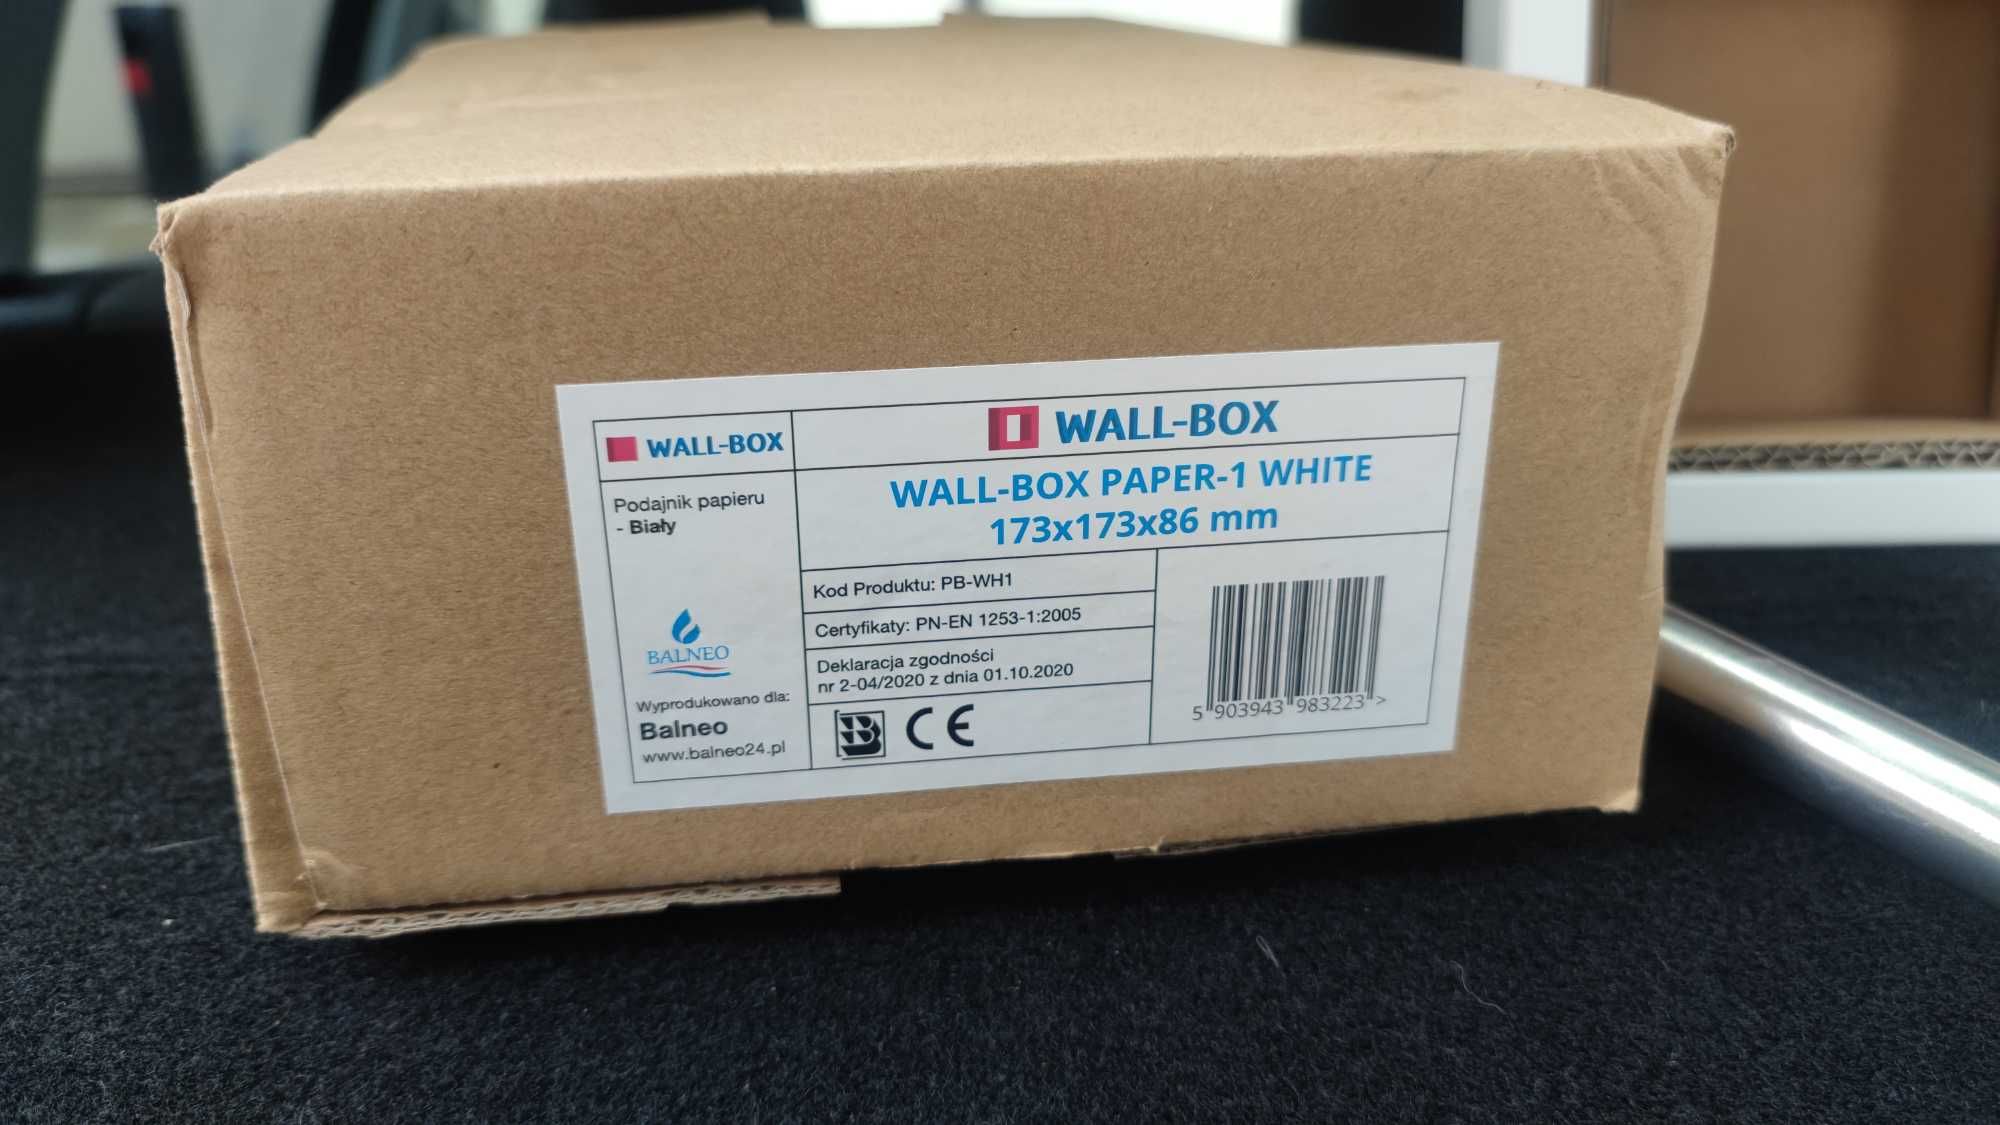 Balneo Wall-Box Paper 1 White uchwyt na papier wnękowy PB-WH1